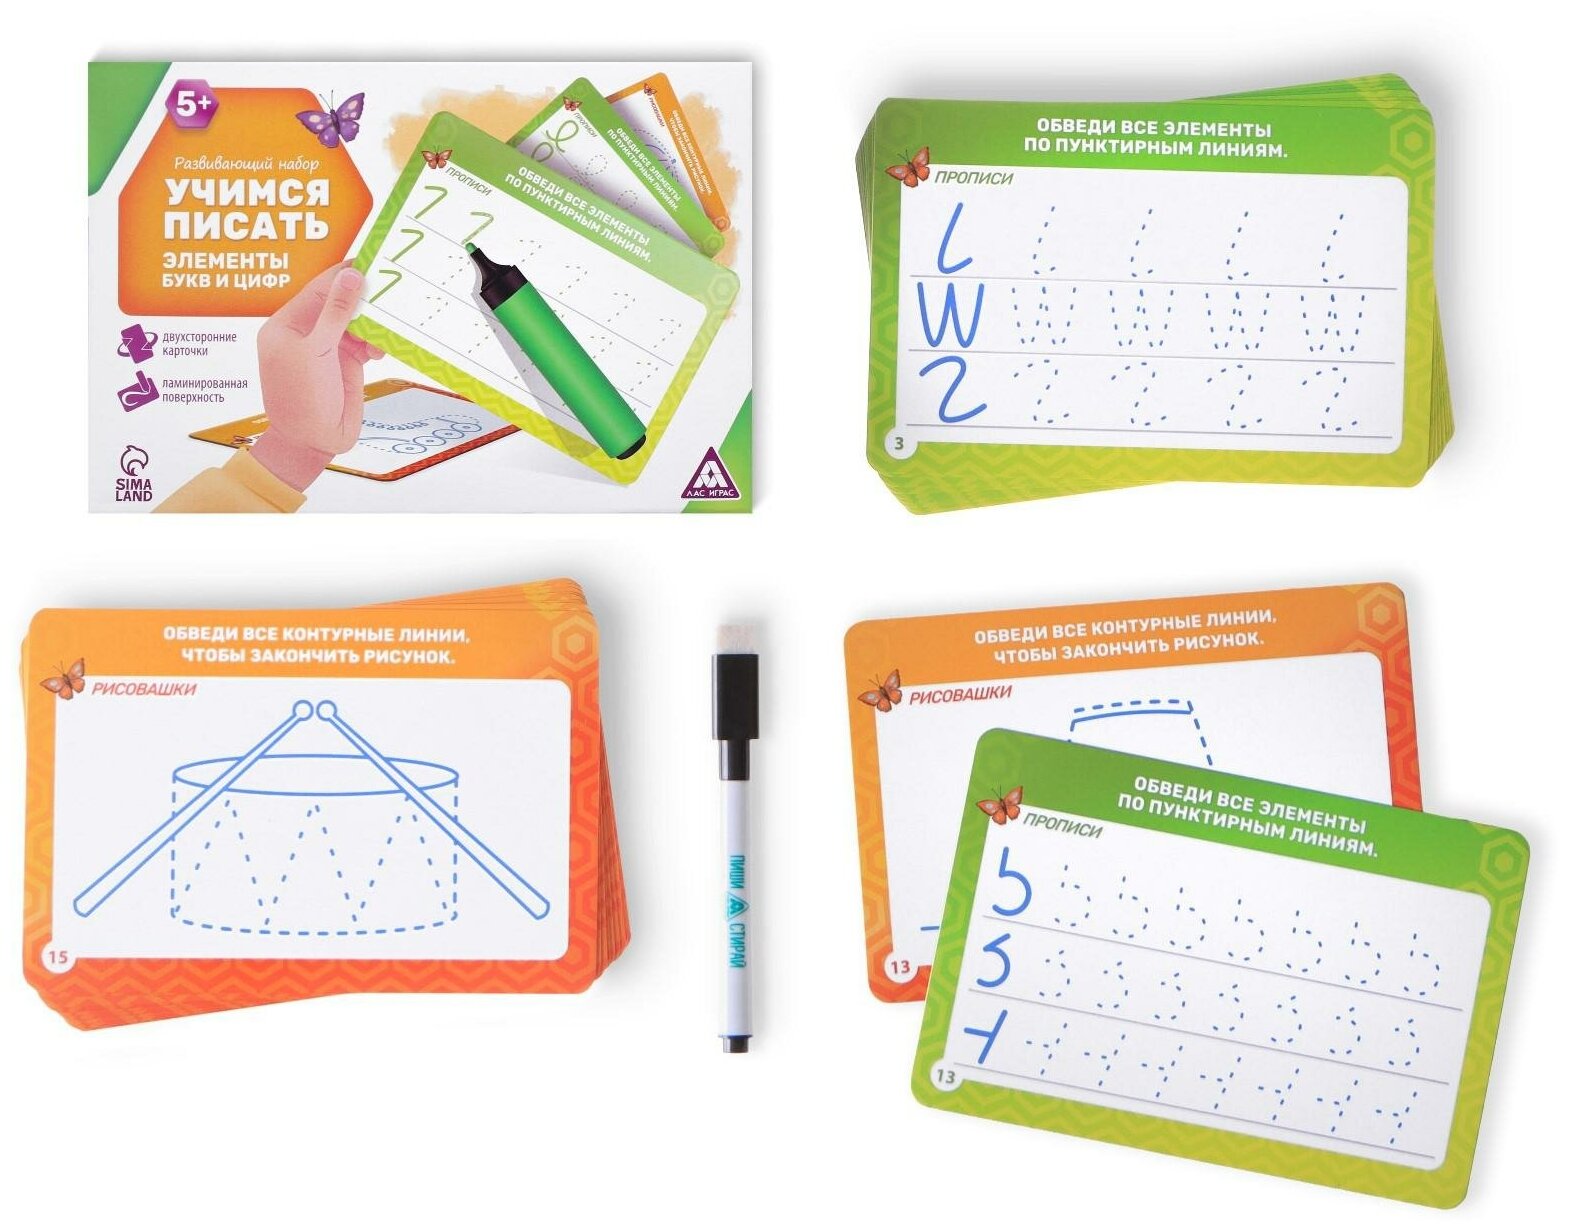 Набор "Учимся писать элементы букв и цифр", развивающий, 20 карт, маркер в комплекте, для детей и малышей от 5 лет